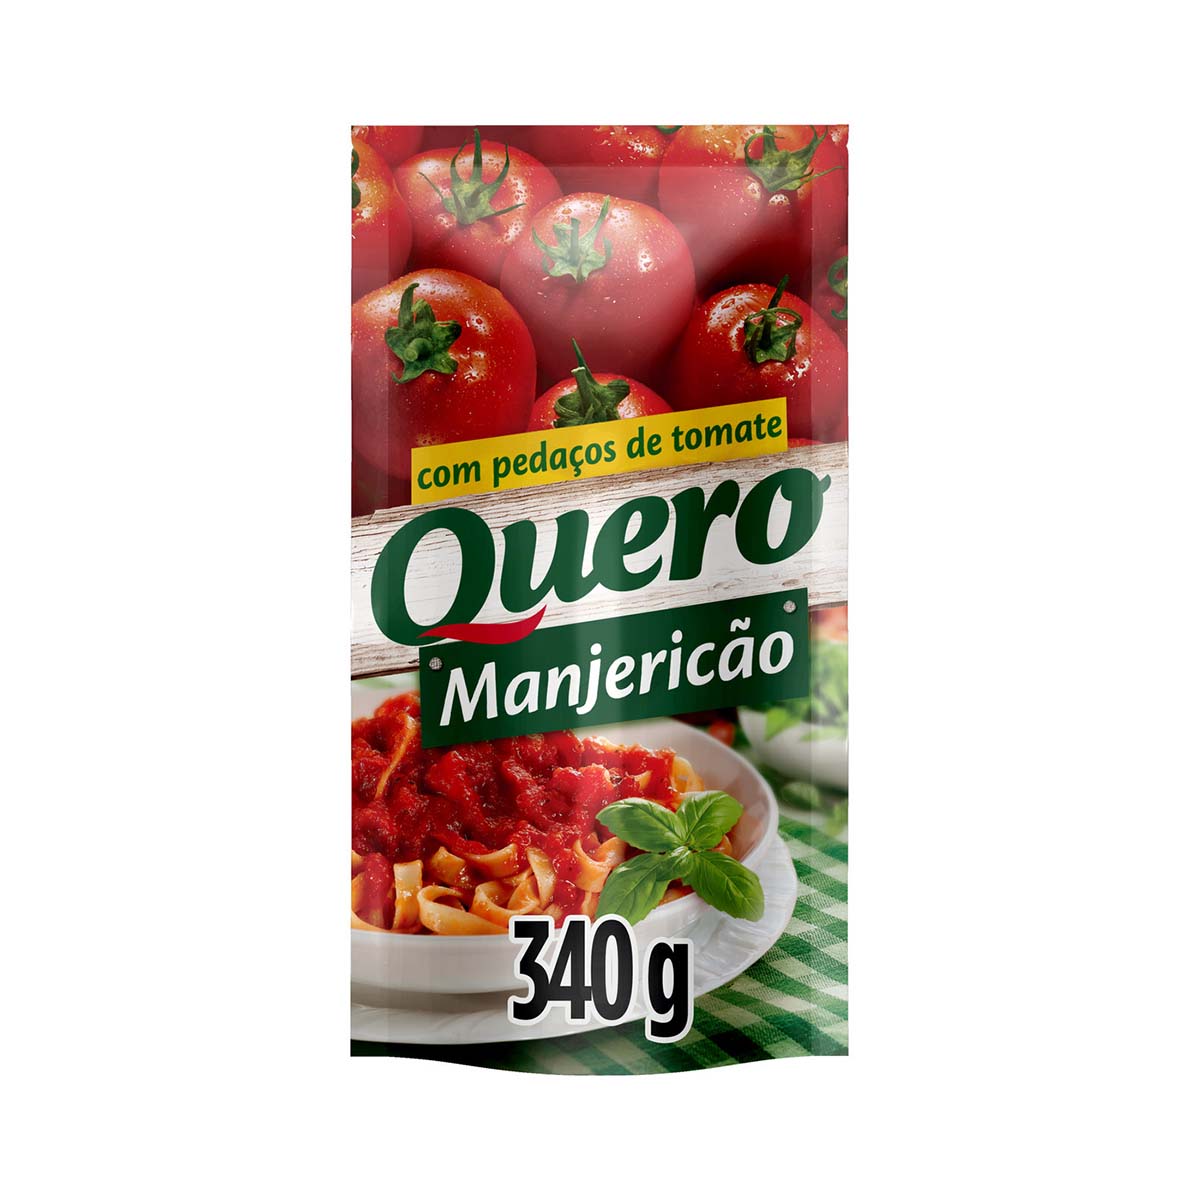 molho-de-tomate-manjericao-sem-pedaco-de-tomate-quero-340g-1.jpg